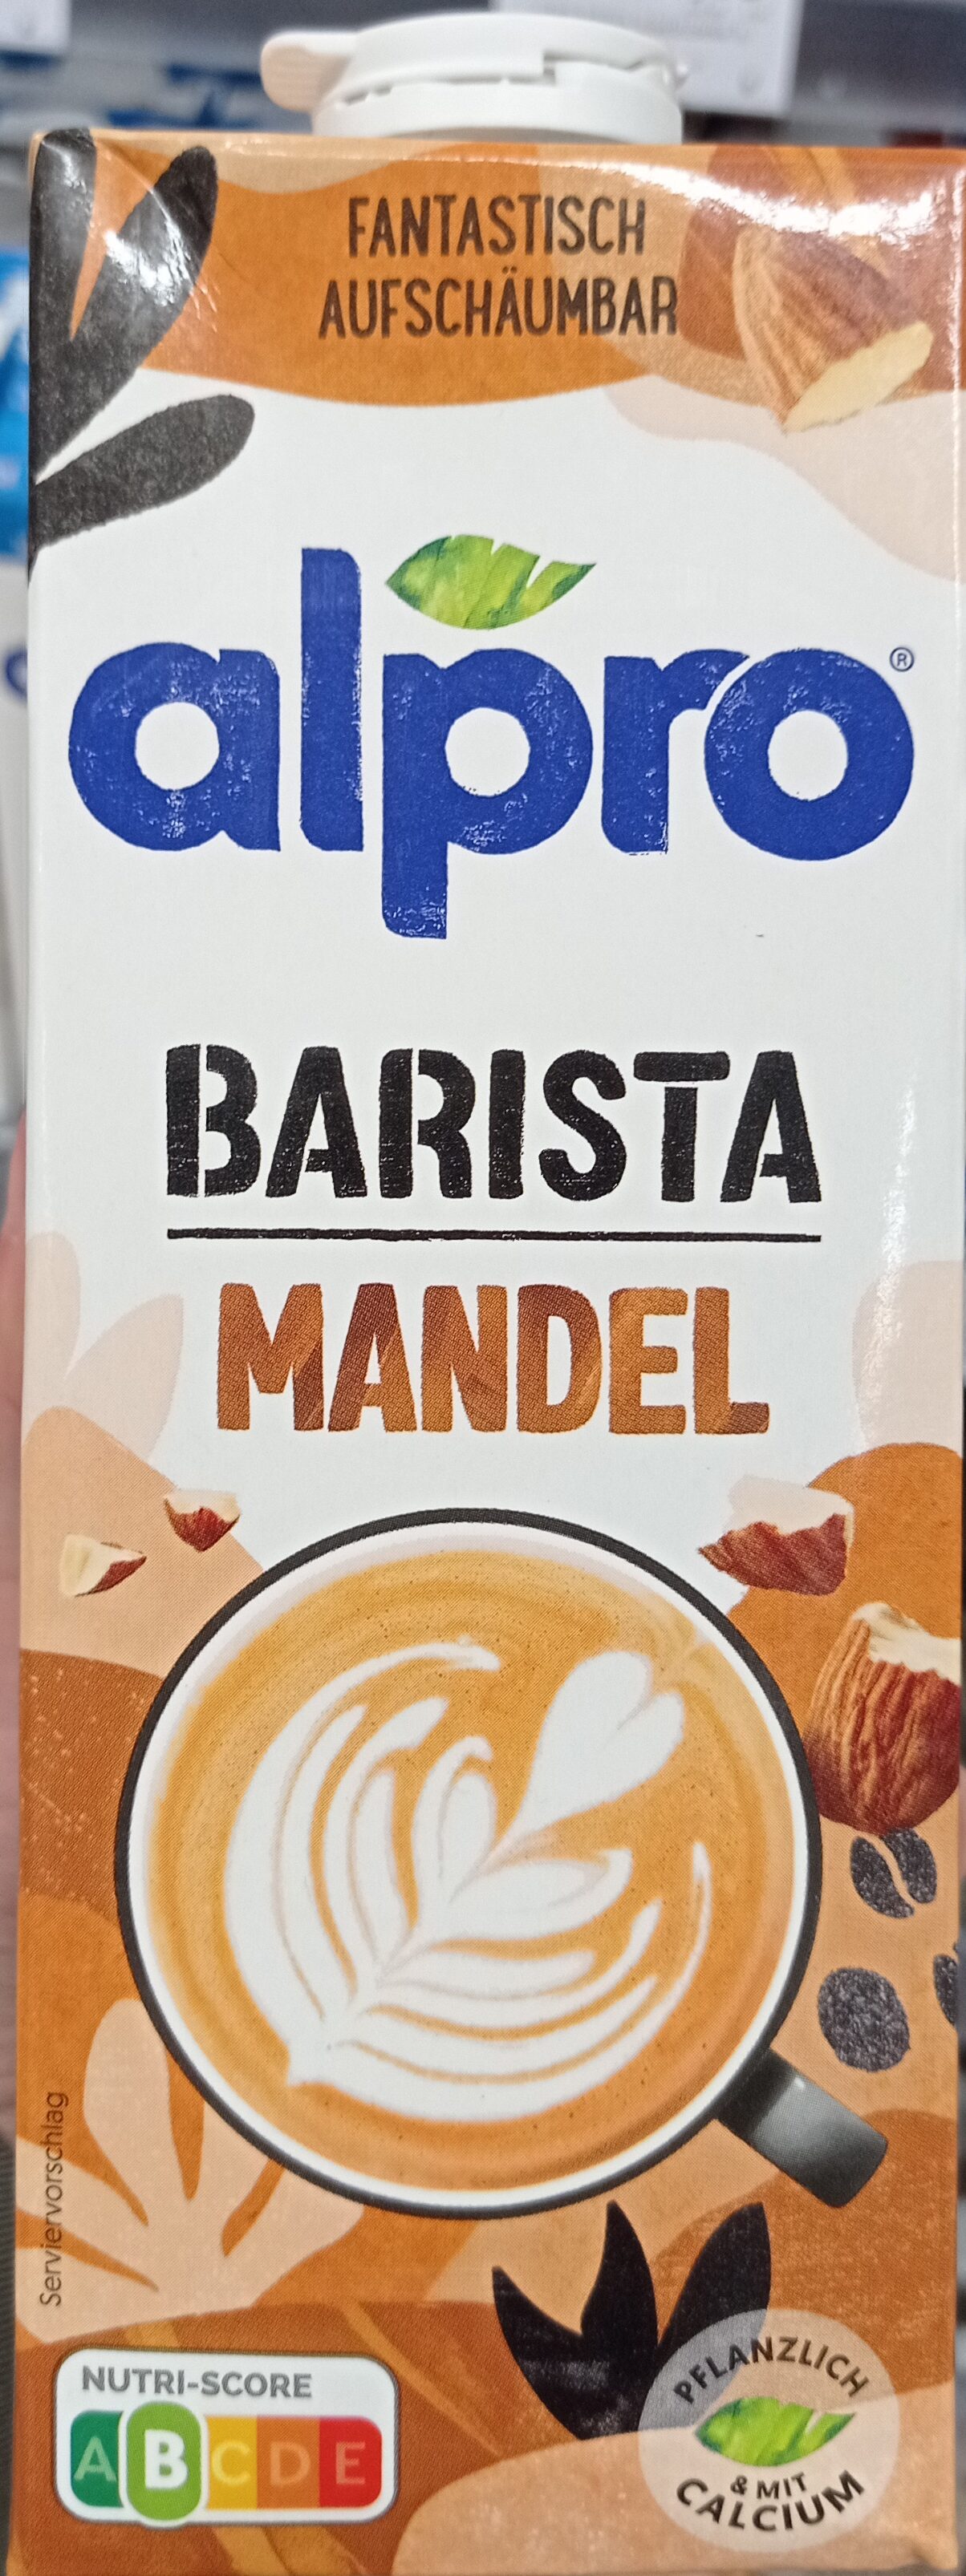 Barista Mandel - Product - de